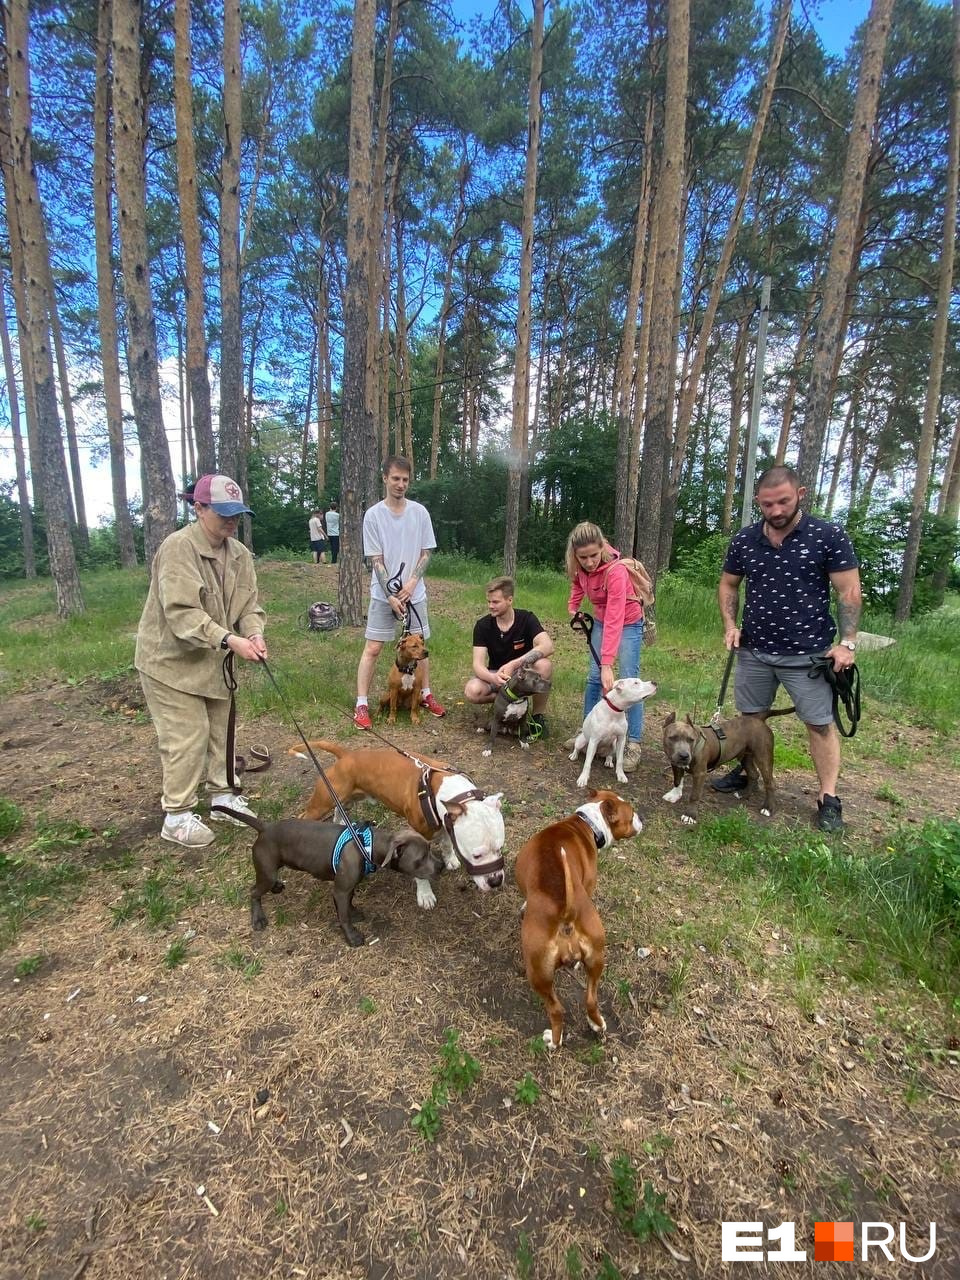 Сообщество Ekaterinburg Staff & Bull организует совестные прогулки собак той же породы